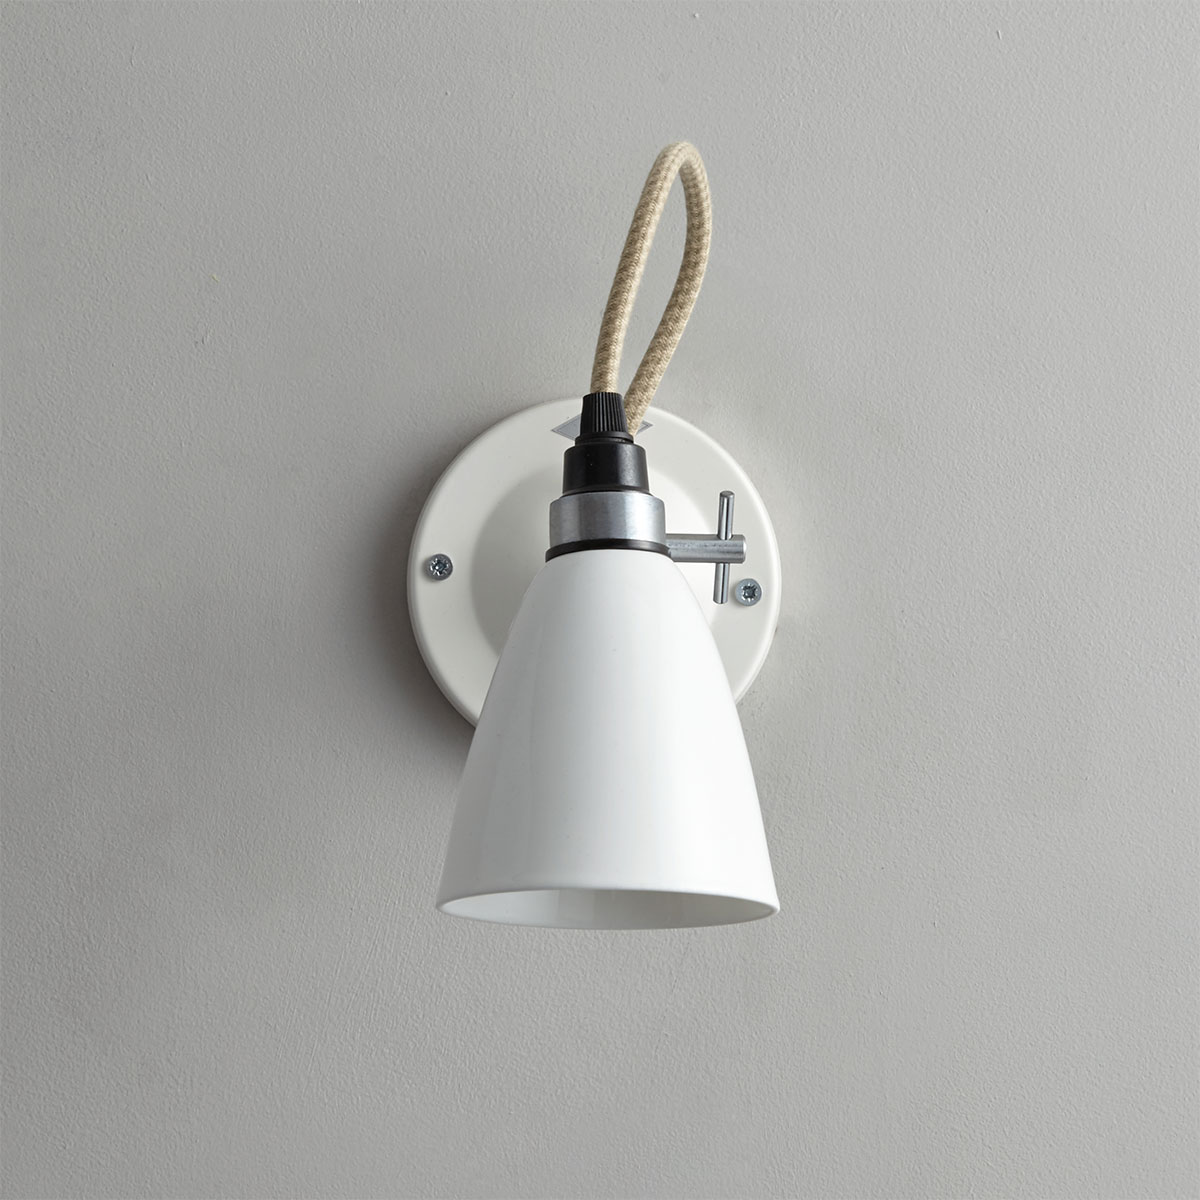 Kleine Porzellan-Wandlampe HECTOR SMALL: Modell FW396 in weiß, mit Schalter am Wandteil, ausgeschaltet